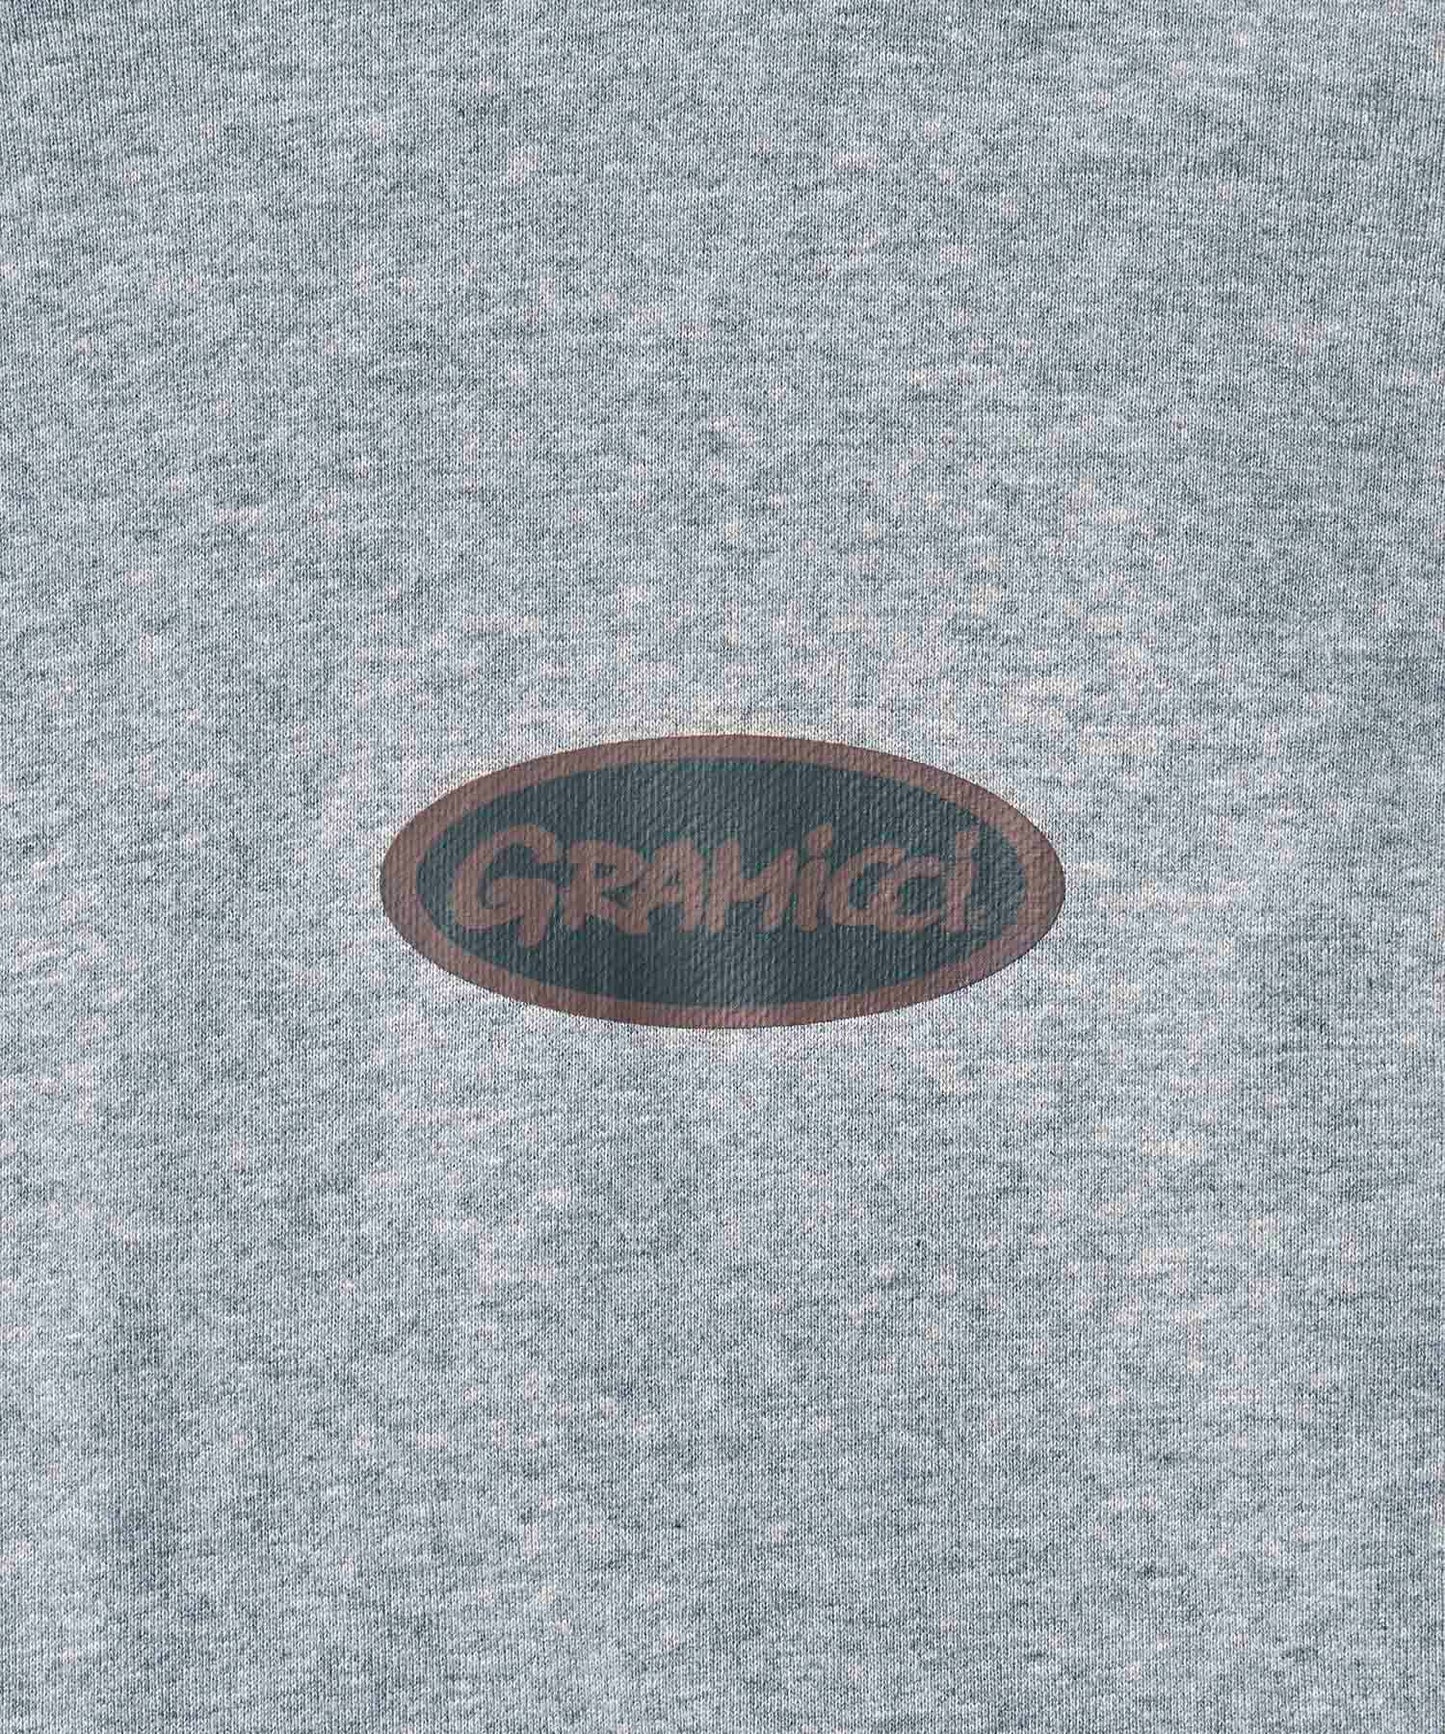 [GRAMICCI グラミチ] GRAMICCI OVAL HOODED SWEATSHIRT | グラミチオーバルフーディースウェットシャツ